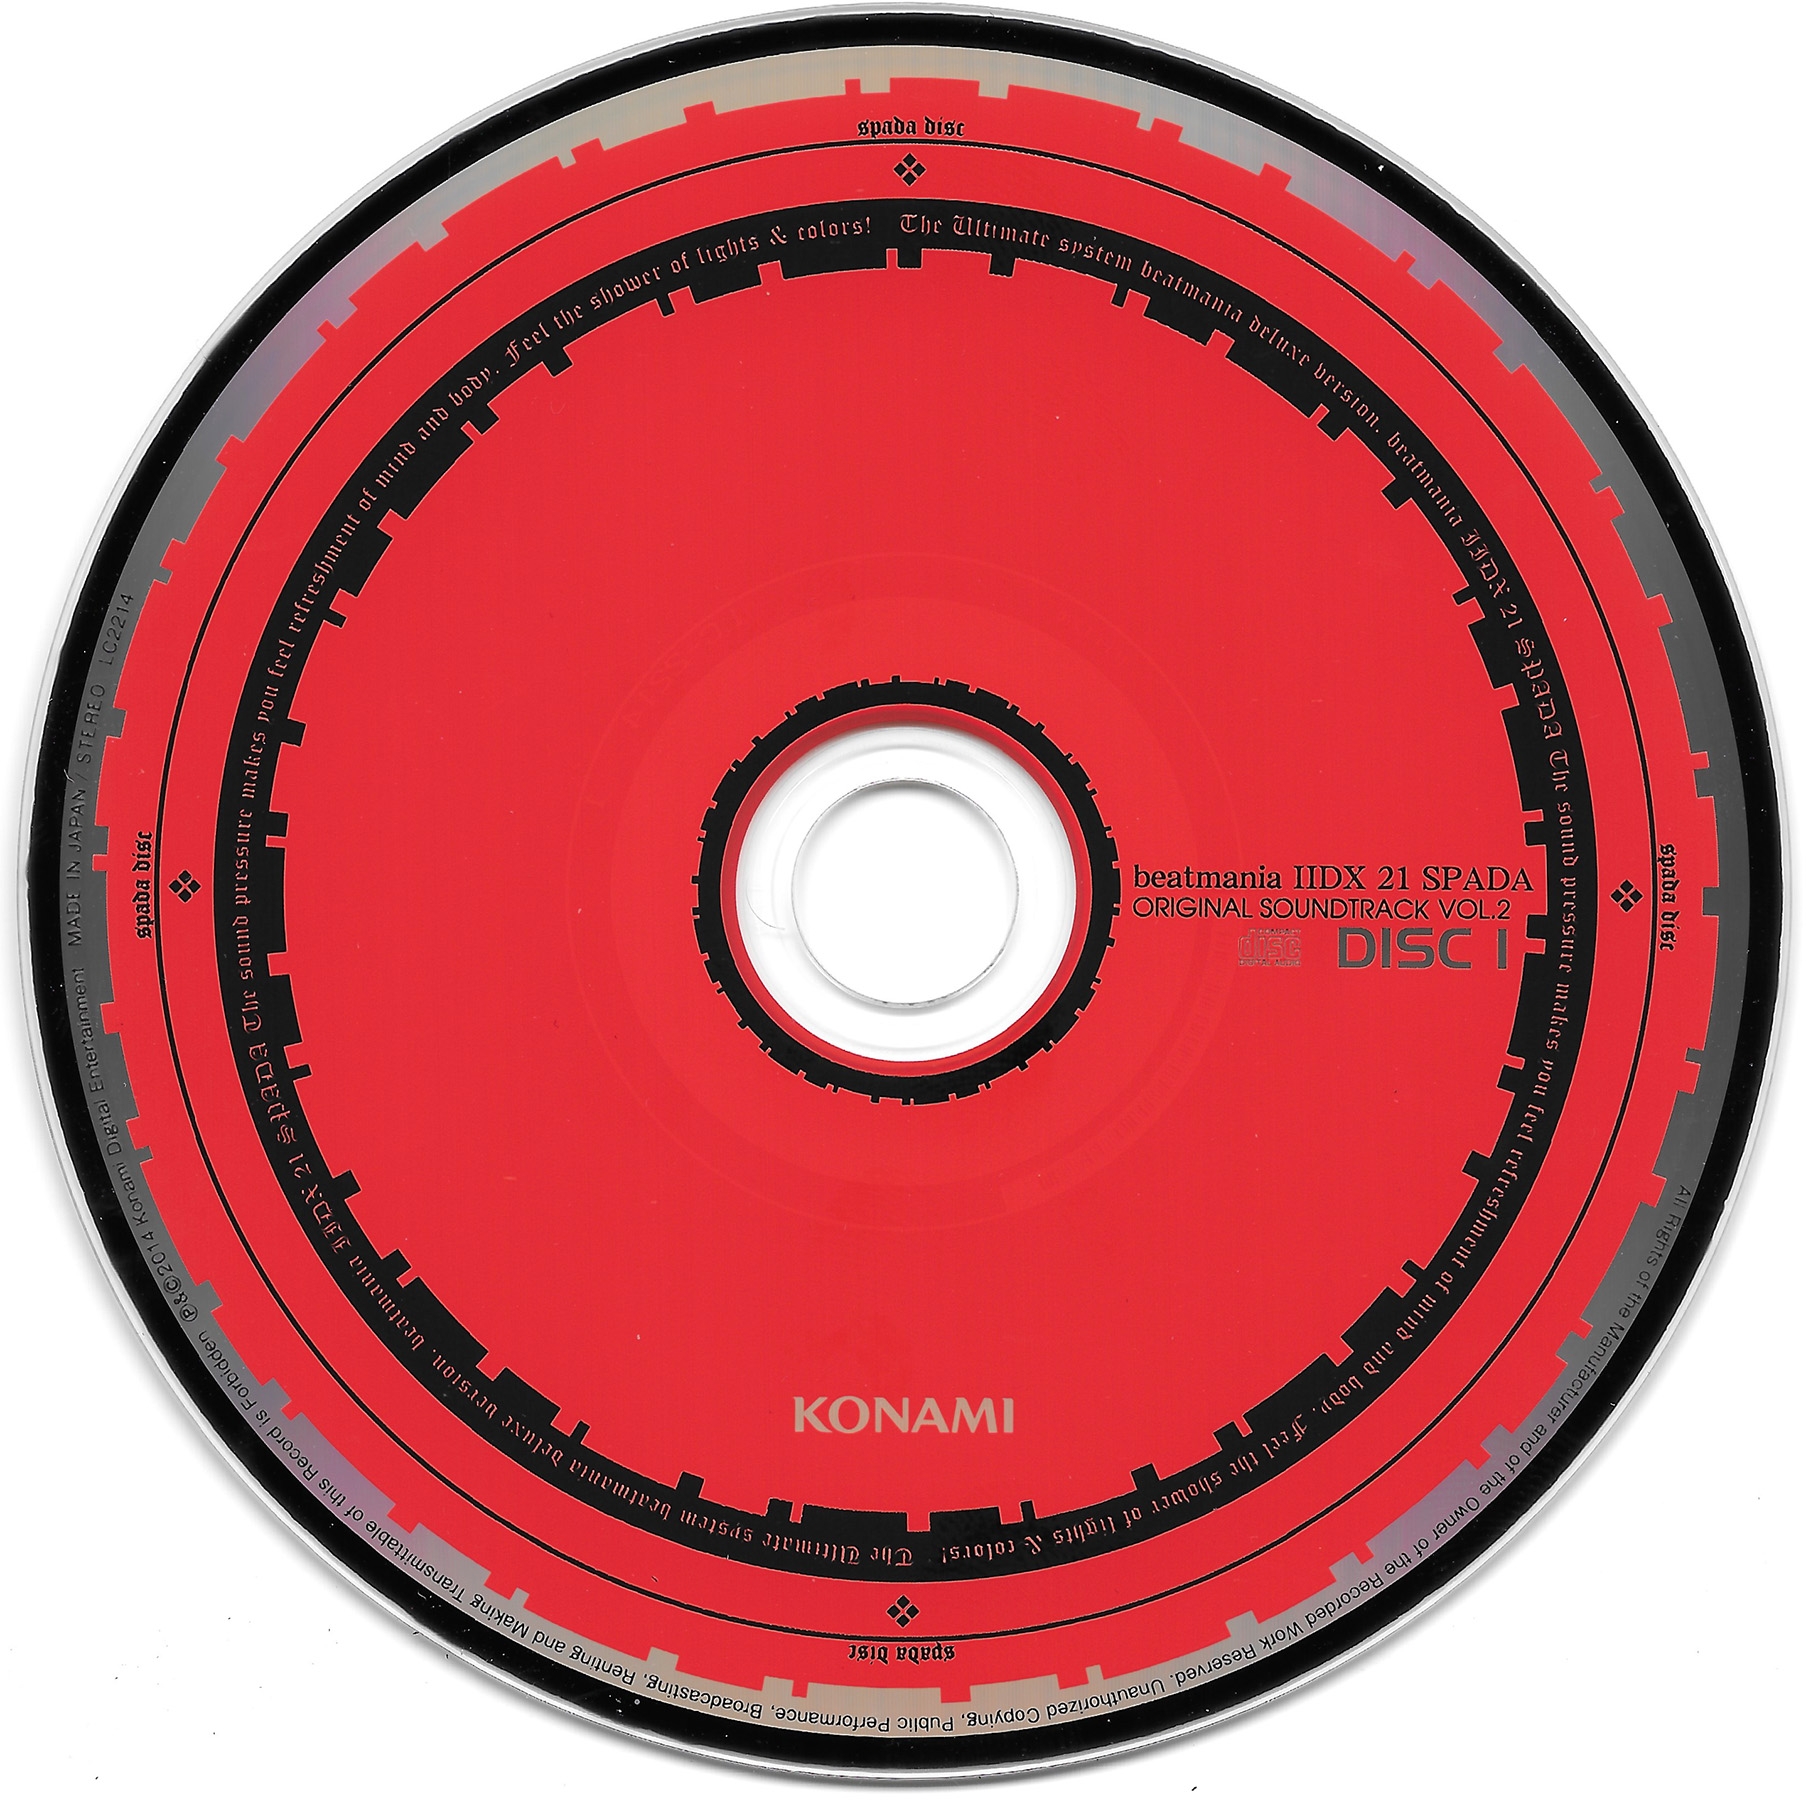 beatmania IIDX 21 SPADA ORIGINAL SOUNDTRACK :JHAb90bd6bc07:虹色